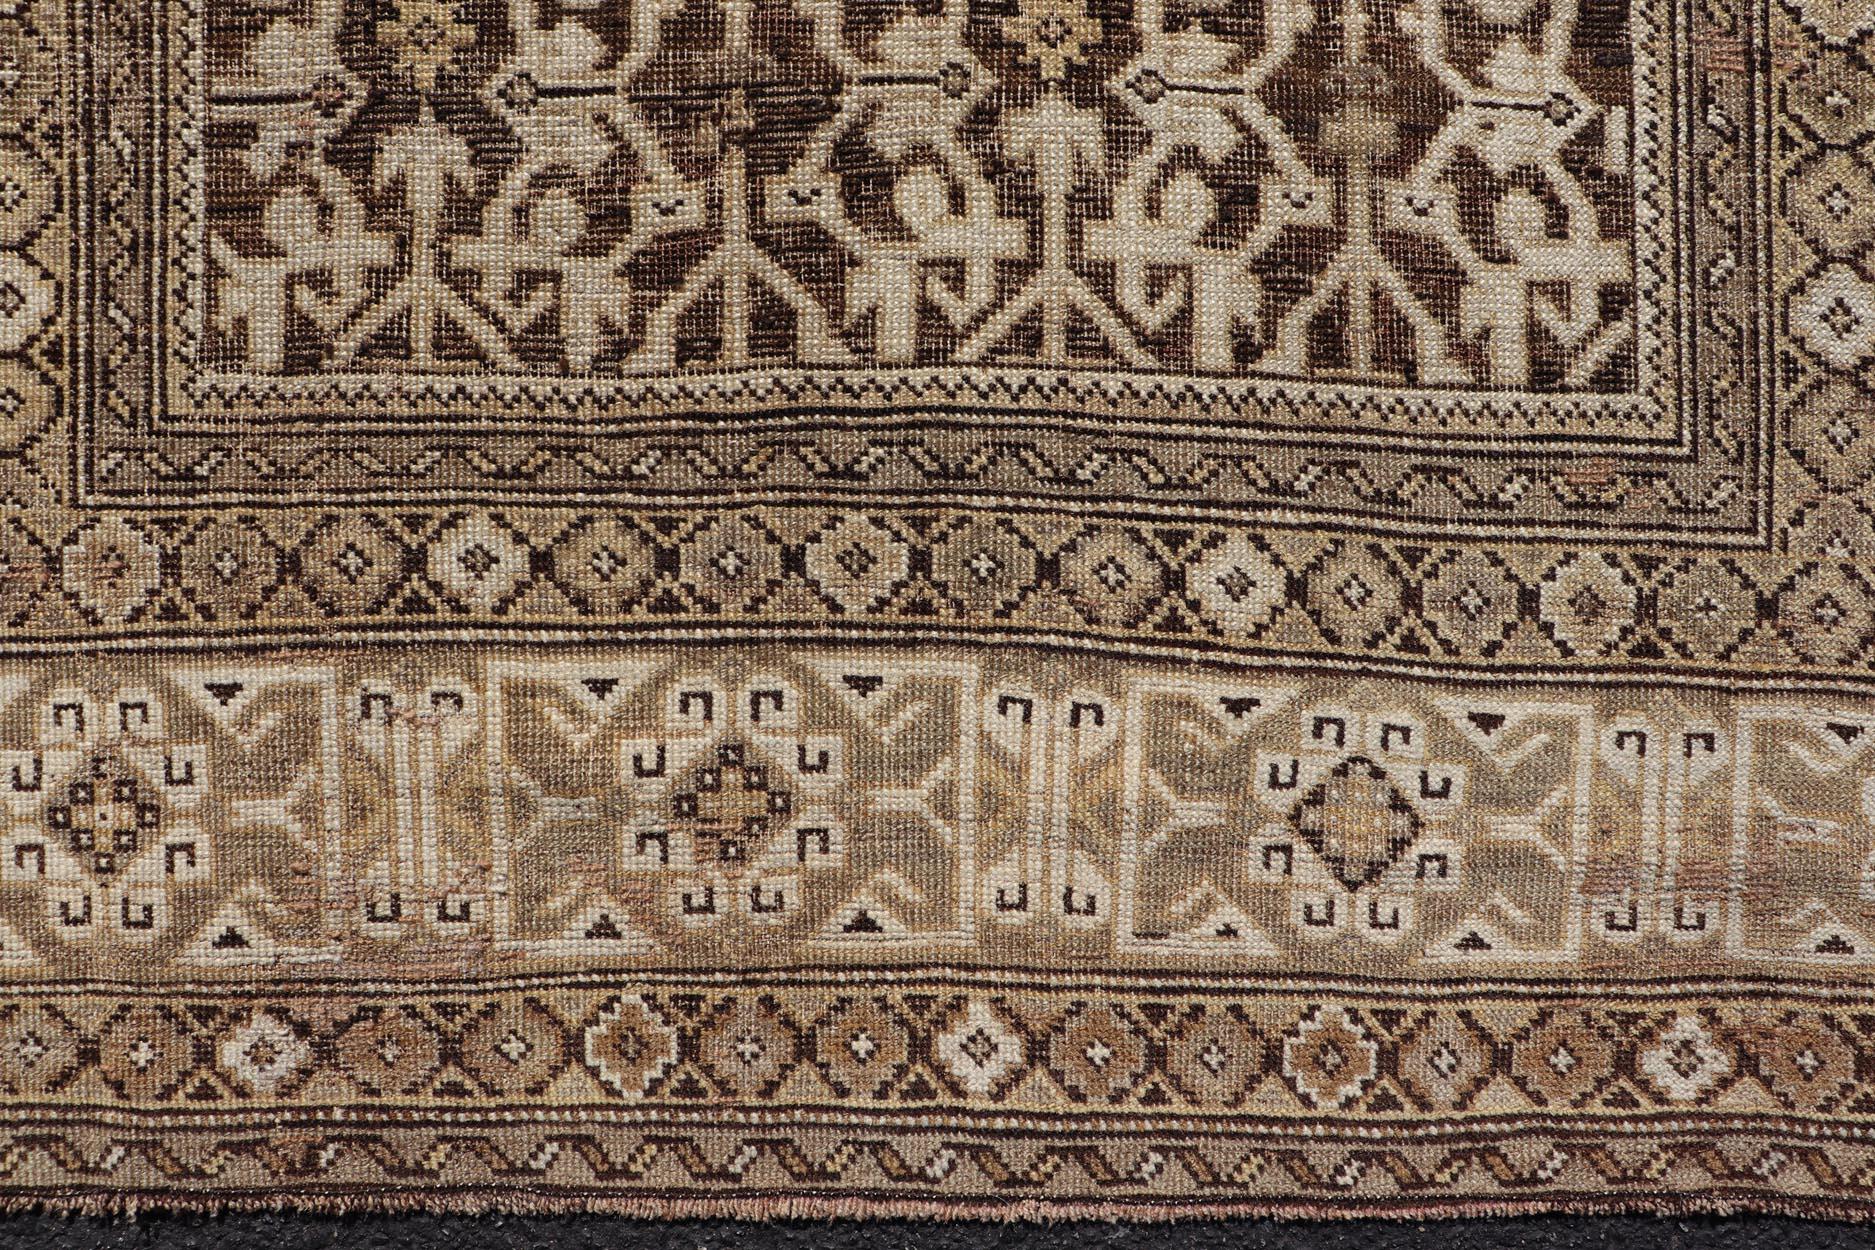 Antiker handgeknüpfter kaukasischer Kazak-Teppich aus Wolle mit dunkelbraunem Hintergrund. Keivan Woven Arts / rug/EMB-22184-15065 Kazak-Teppich, spätes 19. 
Maße: 3'9 x 5'8
Dieser antike kaukasische Kazak-Teppich aus dem späten 19. Jahrhundert